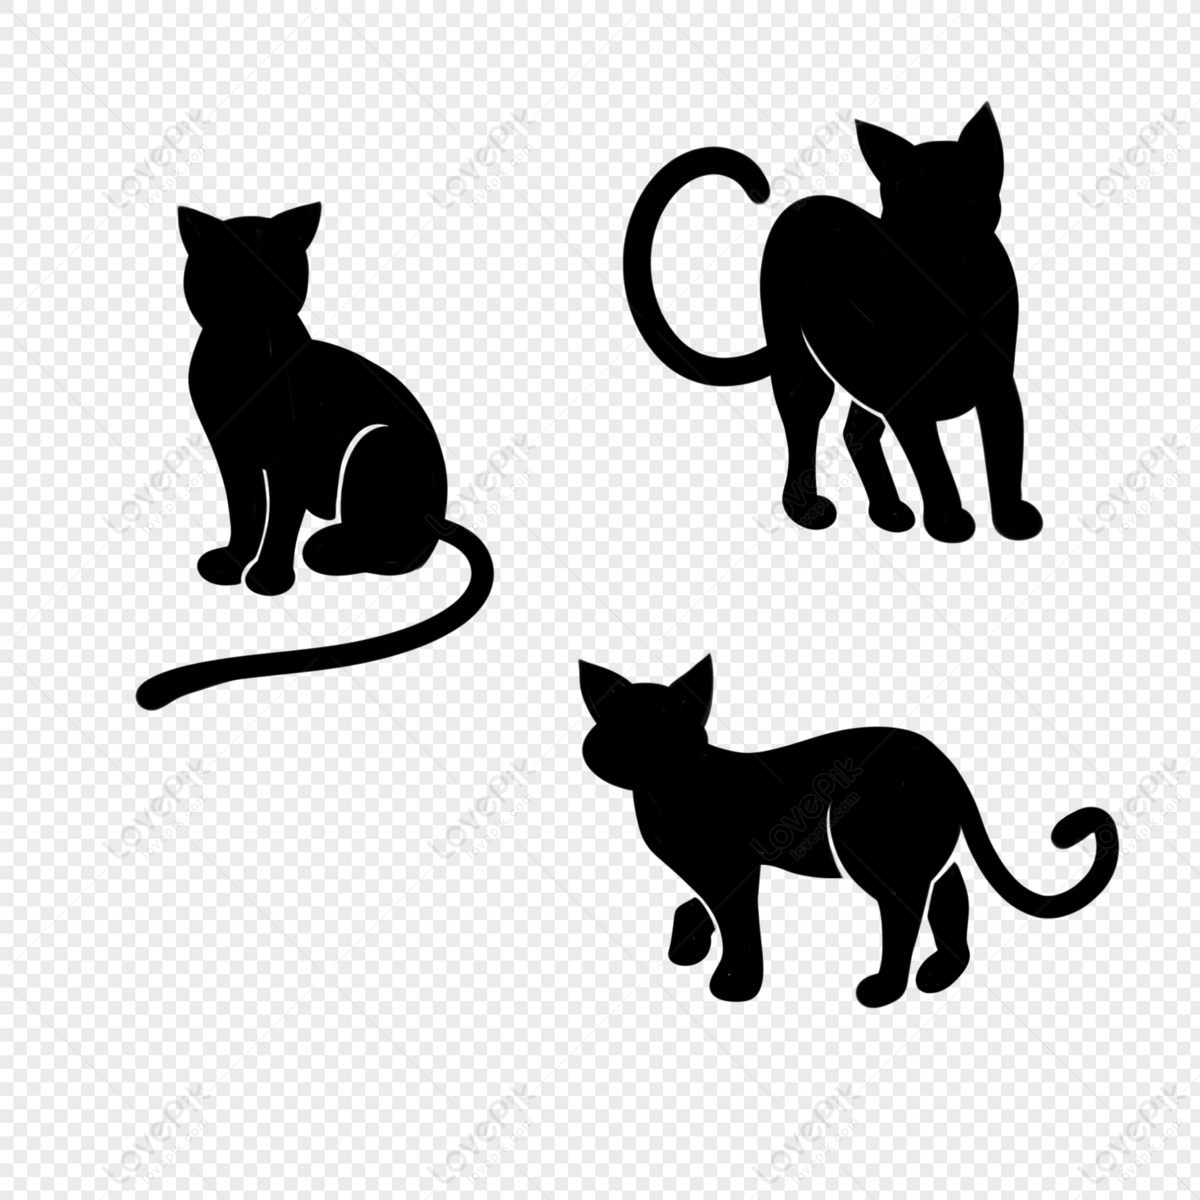 Bạn muốn sở hữu hình ảnh miễn phí về mèo để sử dụng cho mục đích đa dạng? Tải về hình ảnh miễn phí của con mèo ngồi và đứng dưới định dạng PNG ngay hôm nay để sử dụng cho các dự án của bạn.